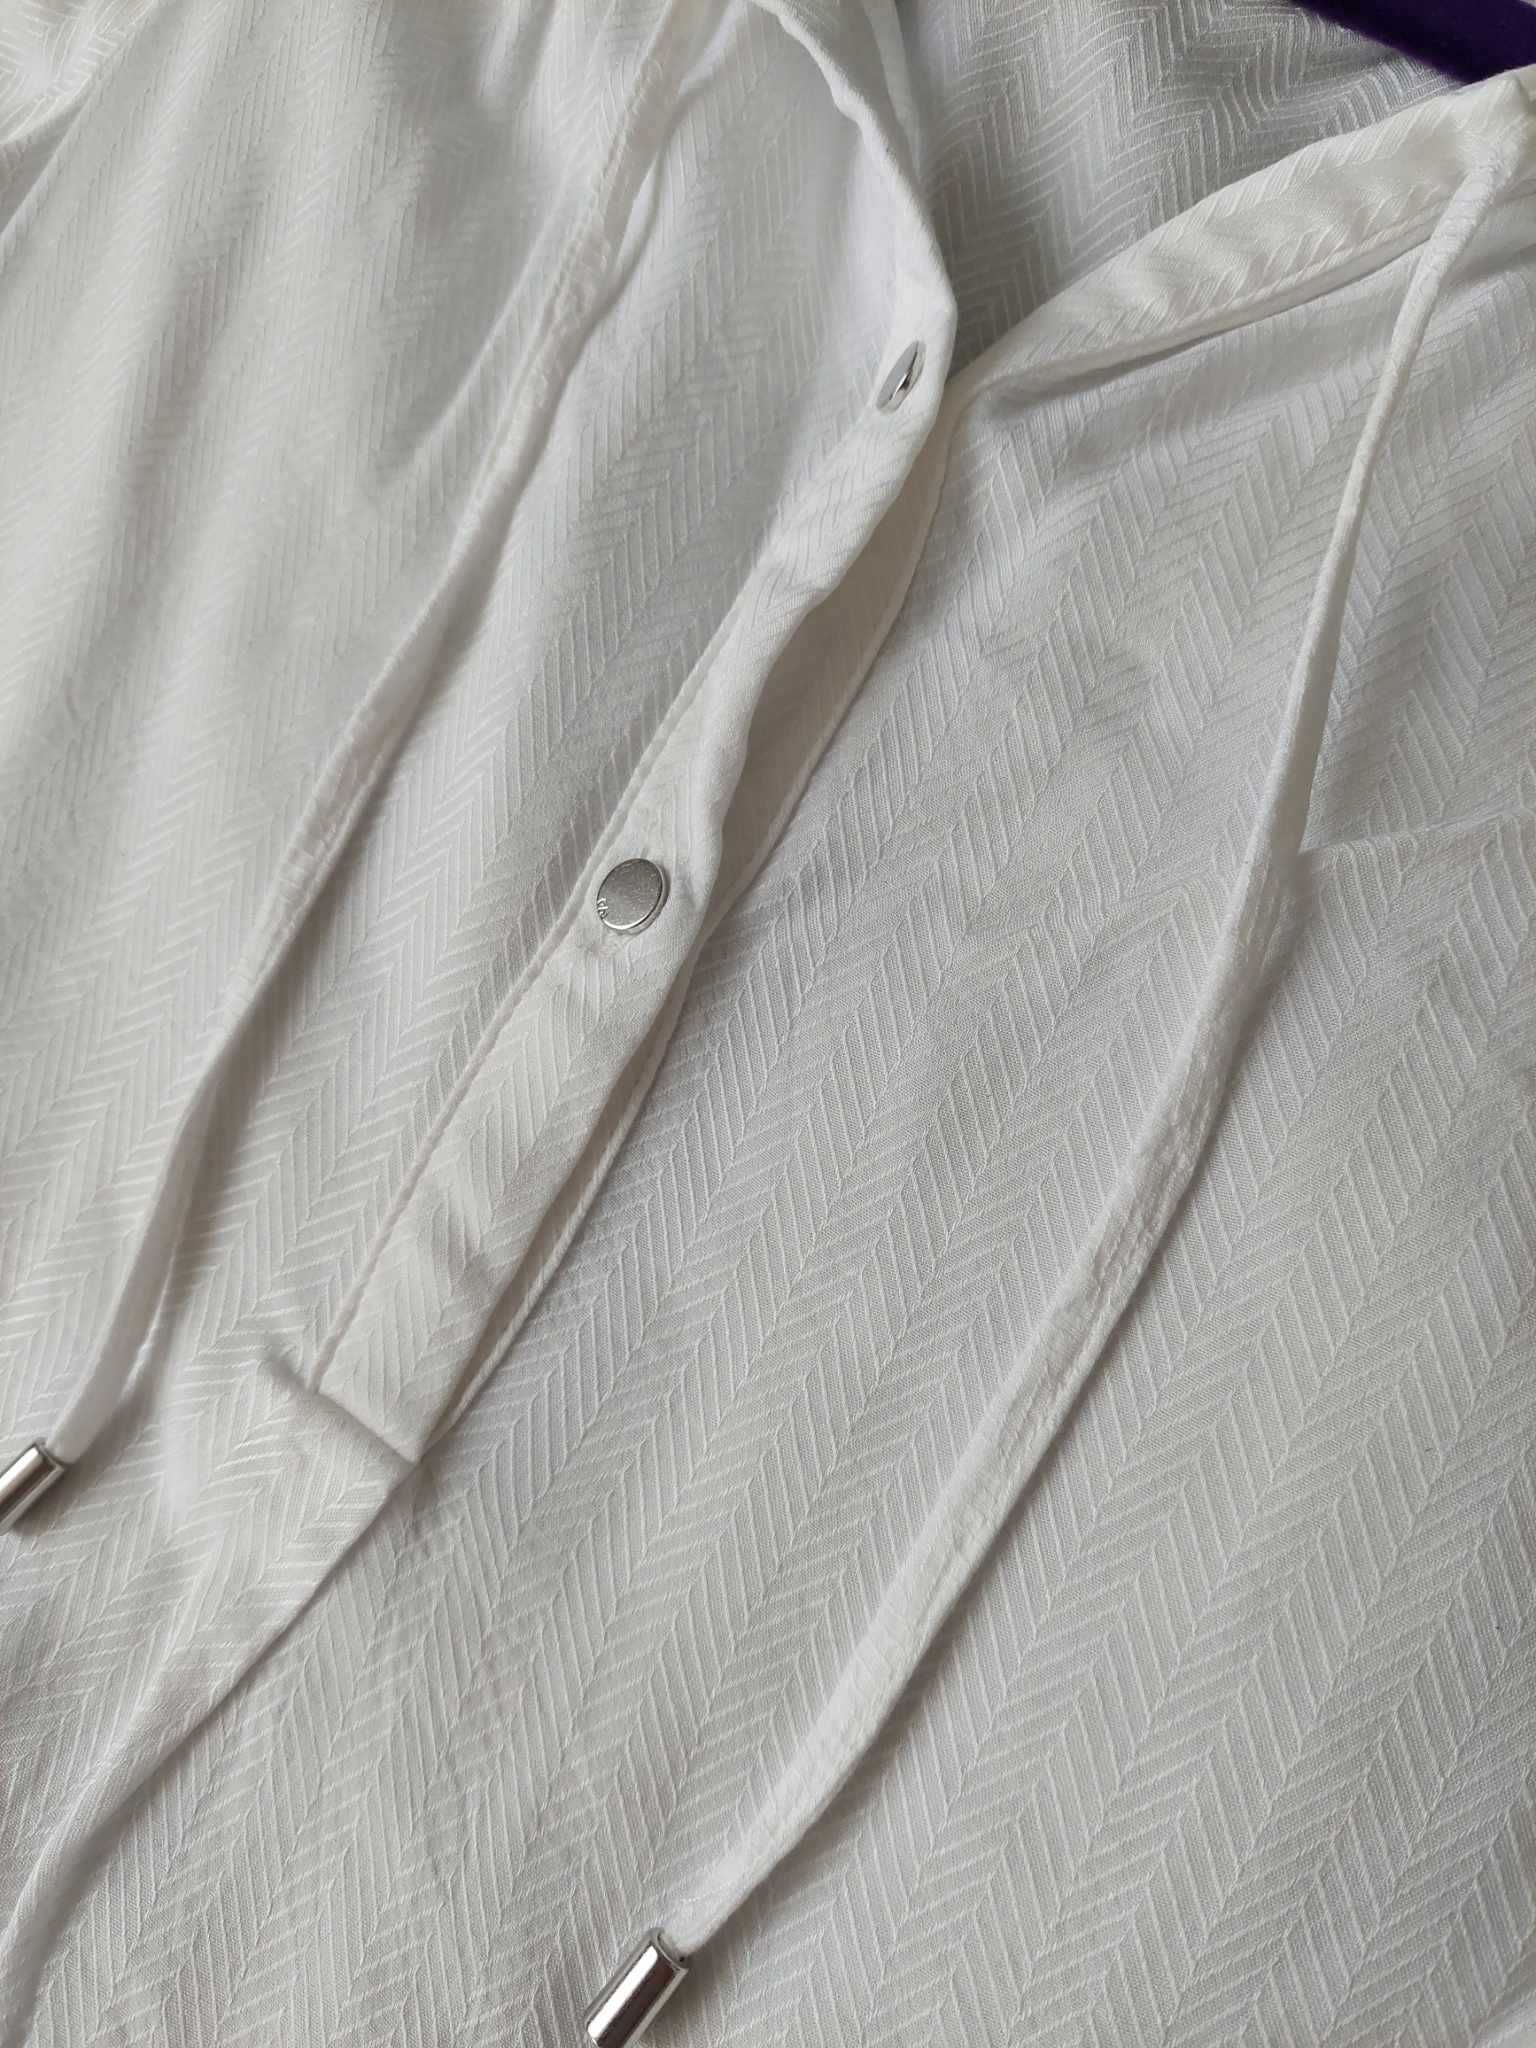 Biała elegancka bluzka rękaw 3/4 rozmiar M S.Oliver